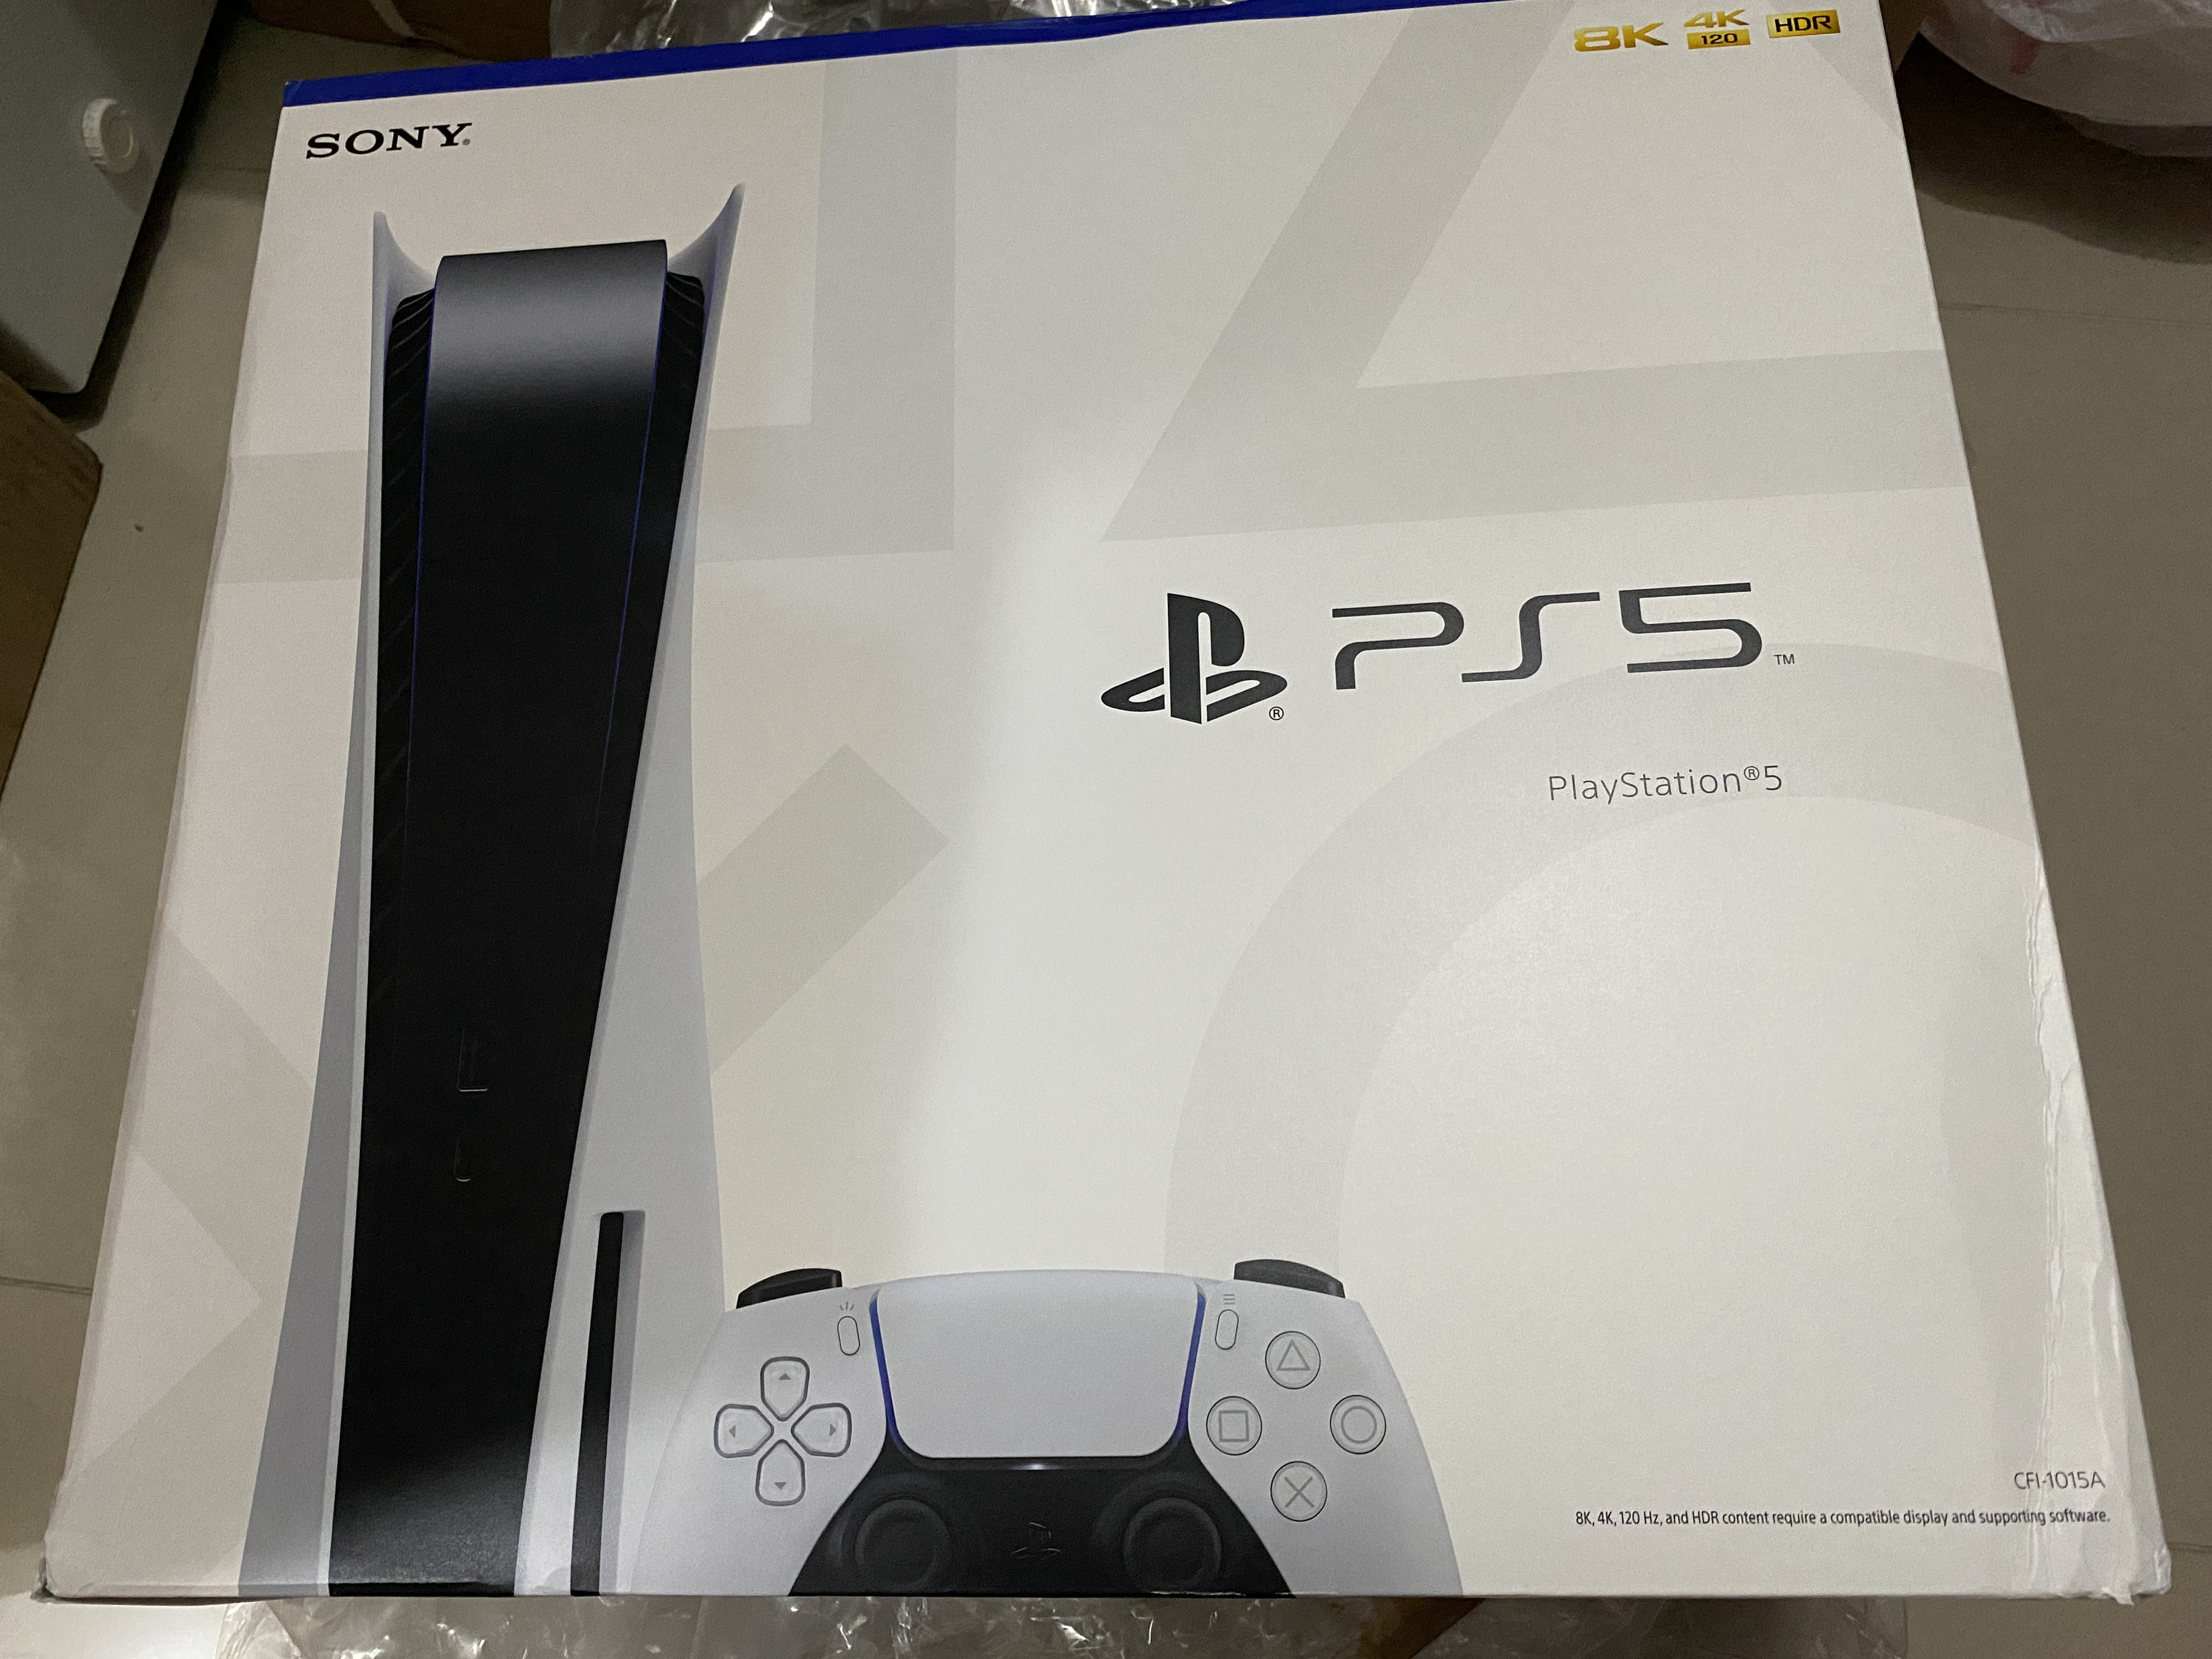 consolas y videojuegos - PlayStation 5 - PS5 Blue ray - Nuevo, sellado